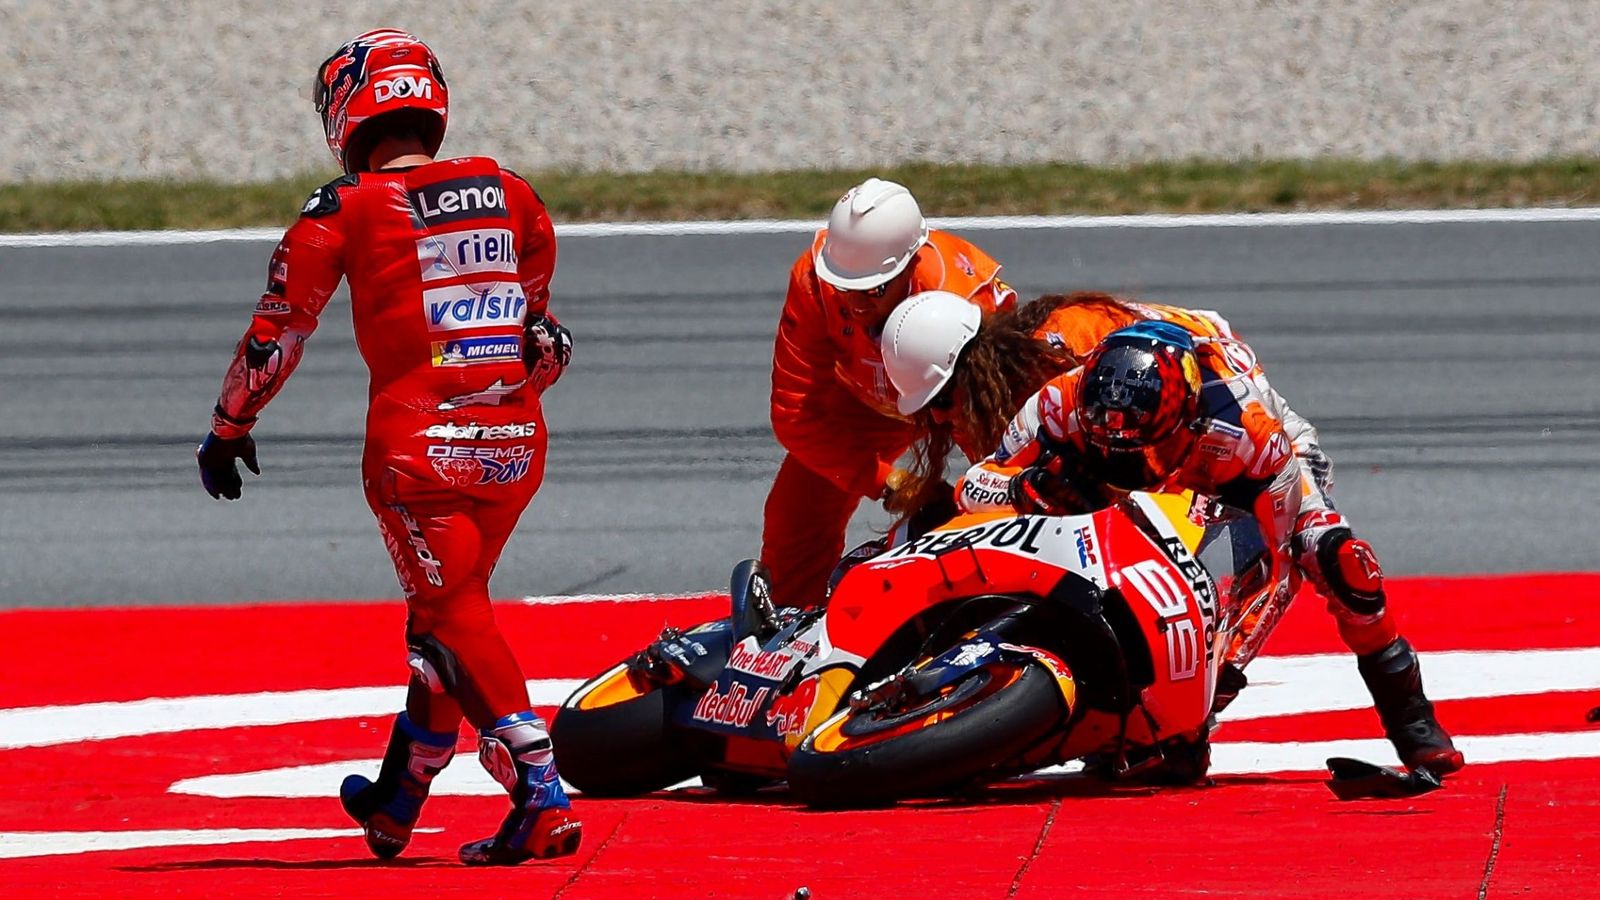 Foto: Jorge Lorenzo intenta levantar su moto frente a Andrea Dovizioso. (EFE)